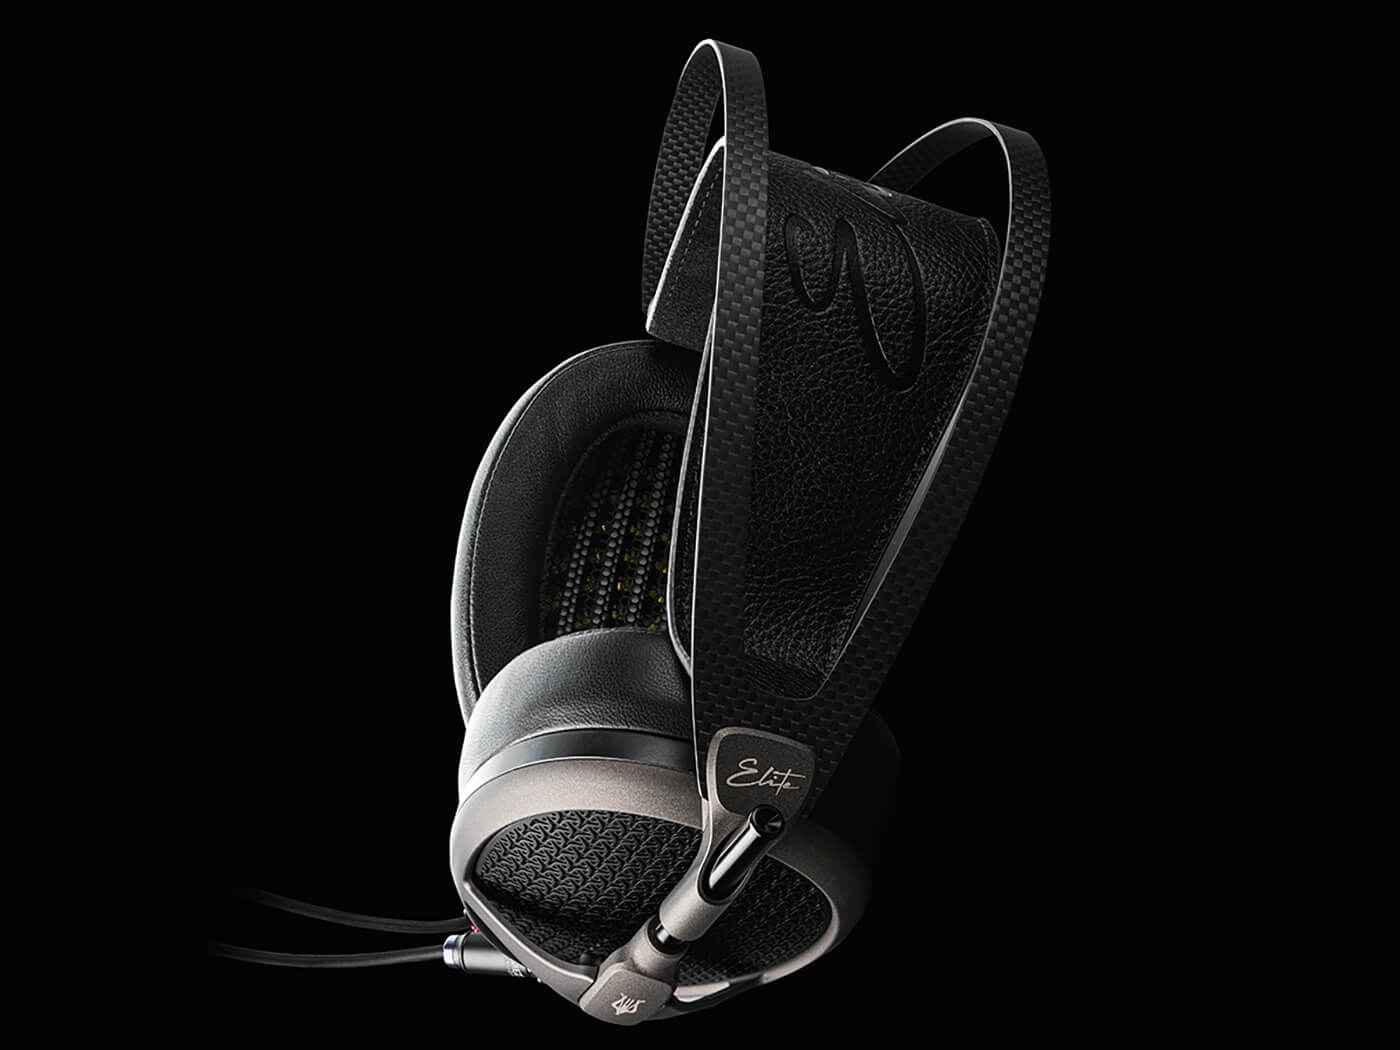 Meze Audio Elite headphones (tungsten)